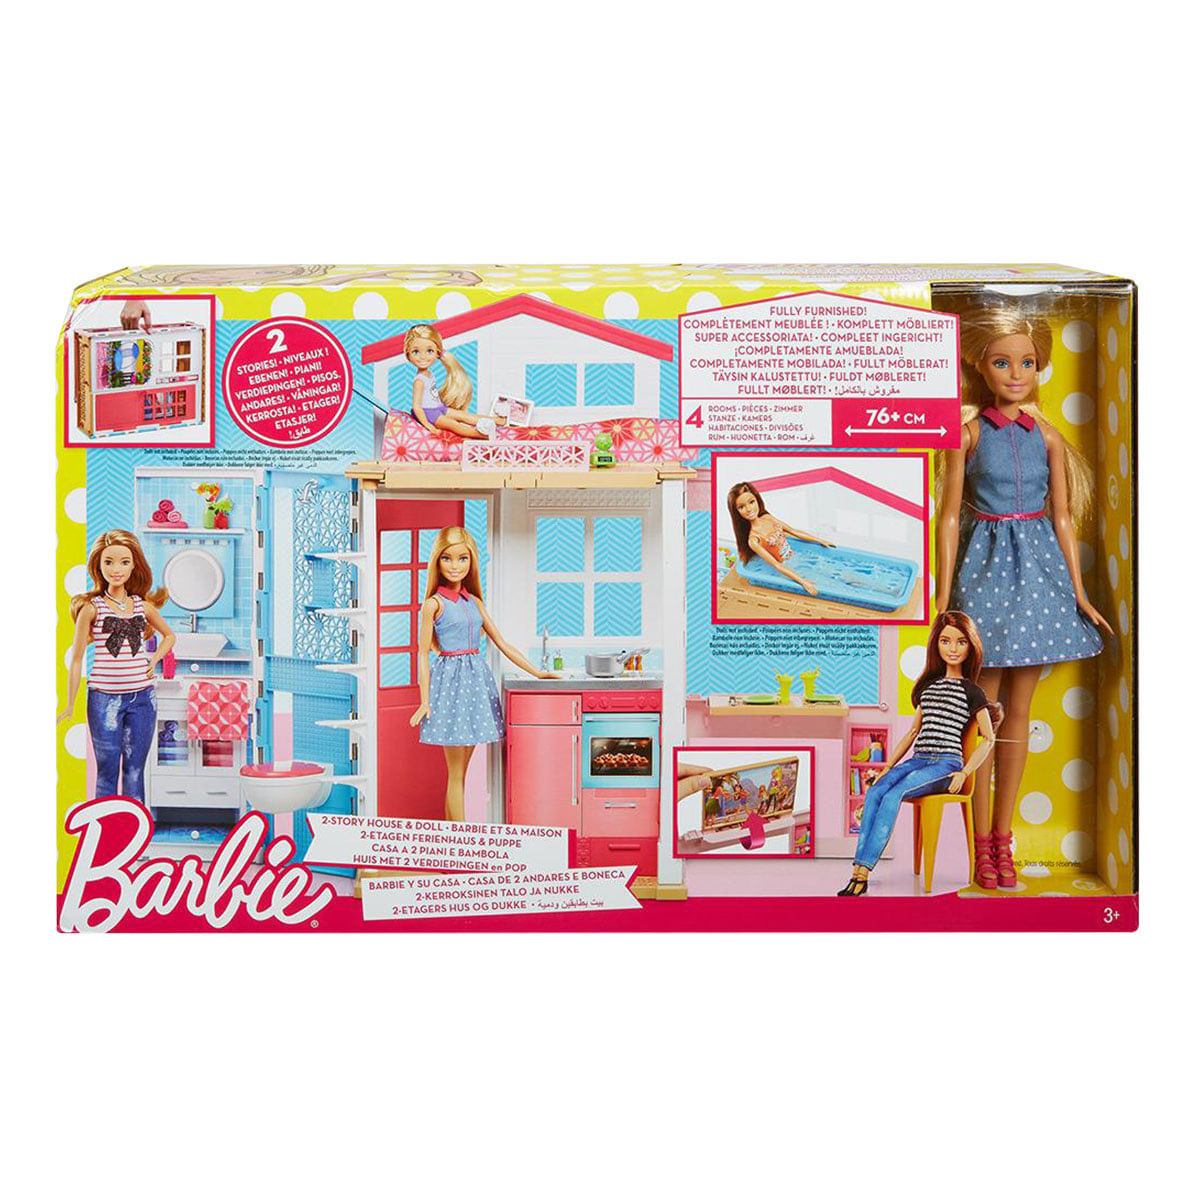 5119103_Cenário Casa Real Barbie Mattel_1_Zoom